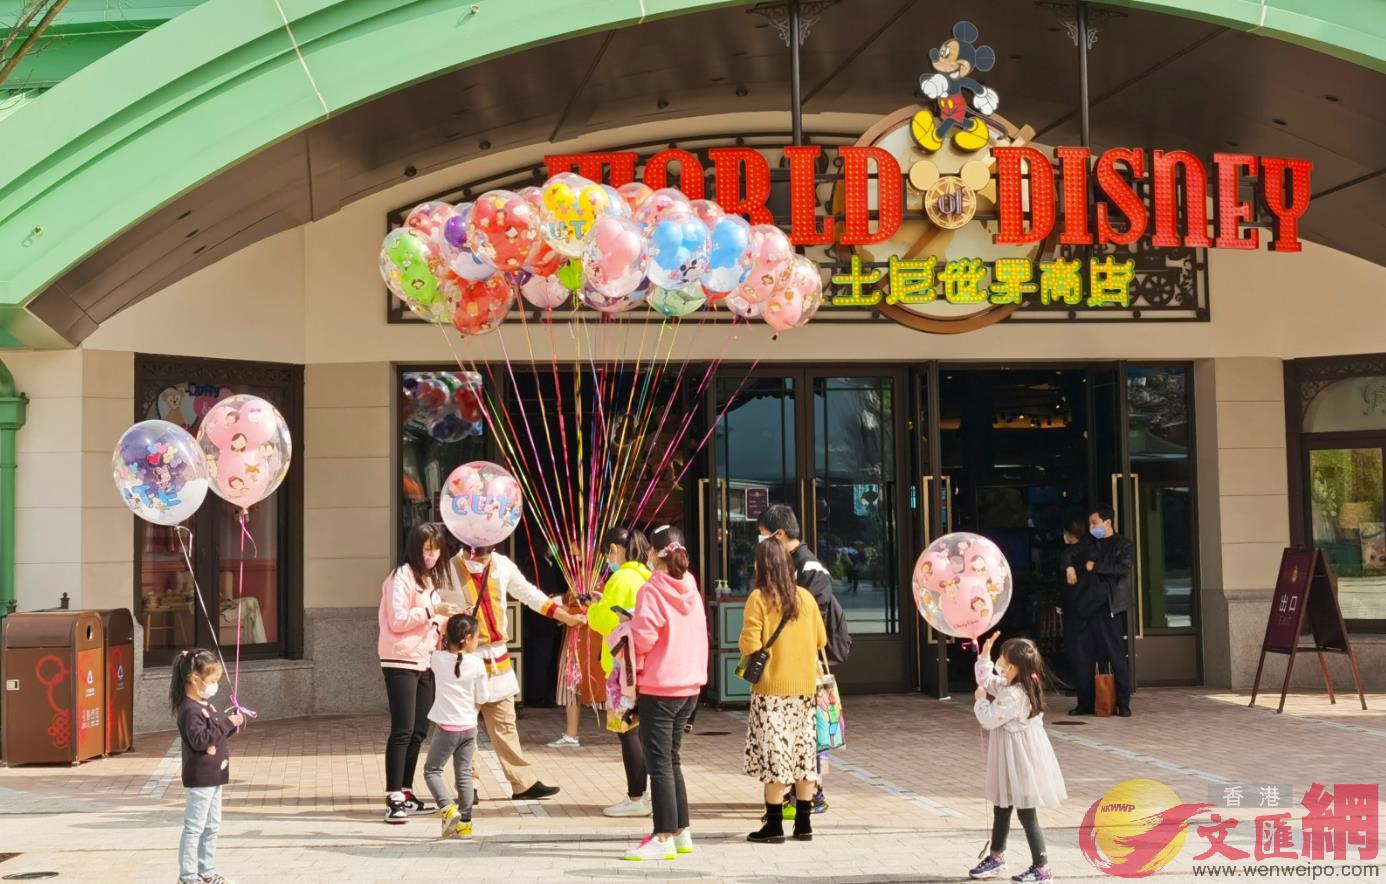 上海迪士尼樂園全球率先重啟A迪士尼小鎮初具人氣(記者孔雯瓊 攝)